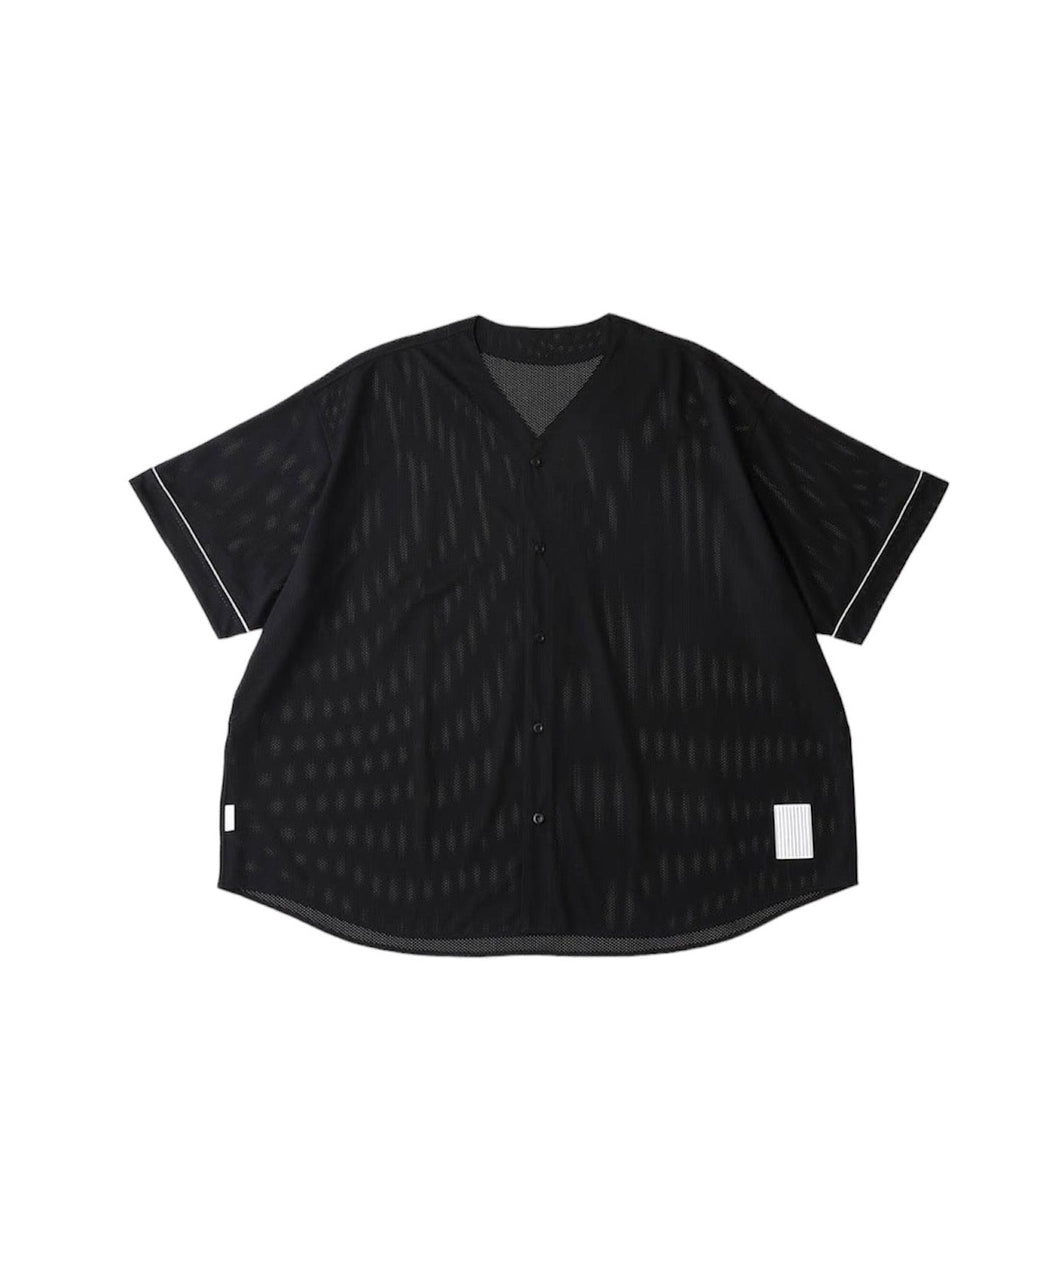 S.F.C エスエフシー 半袖シャツ ベースボールシャツ ブラック STRIPES 